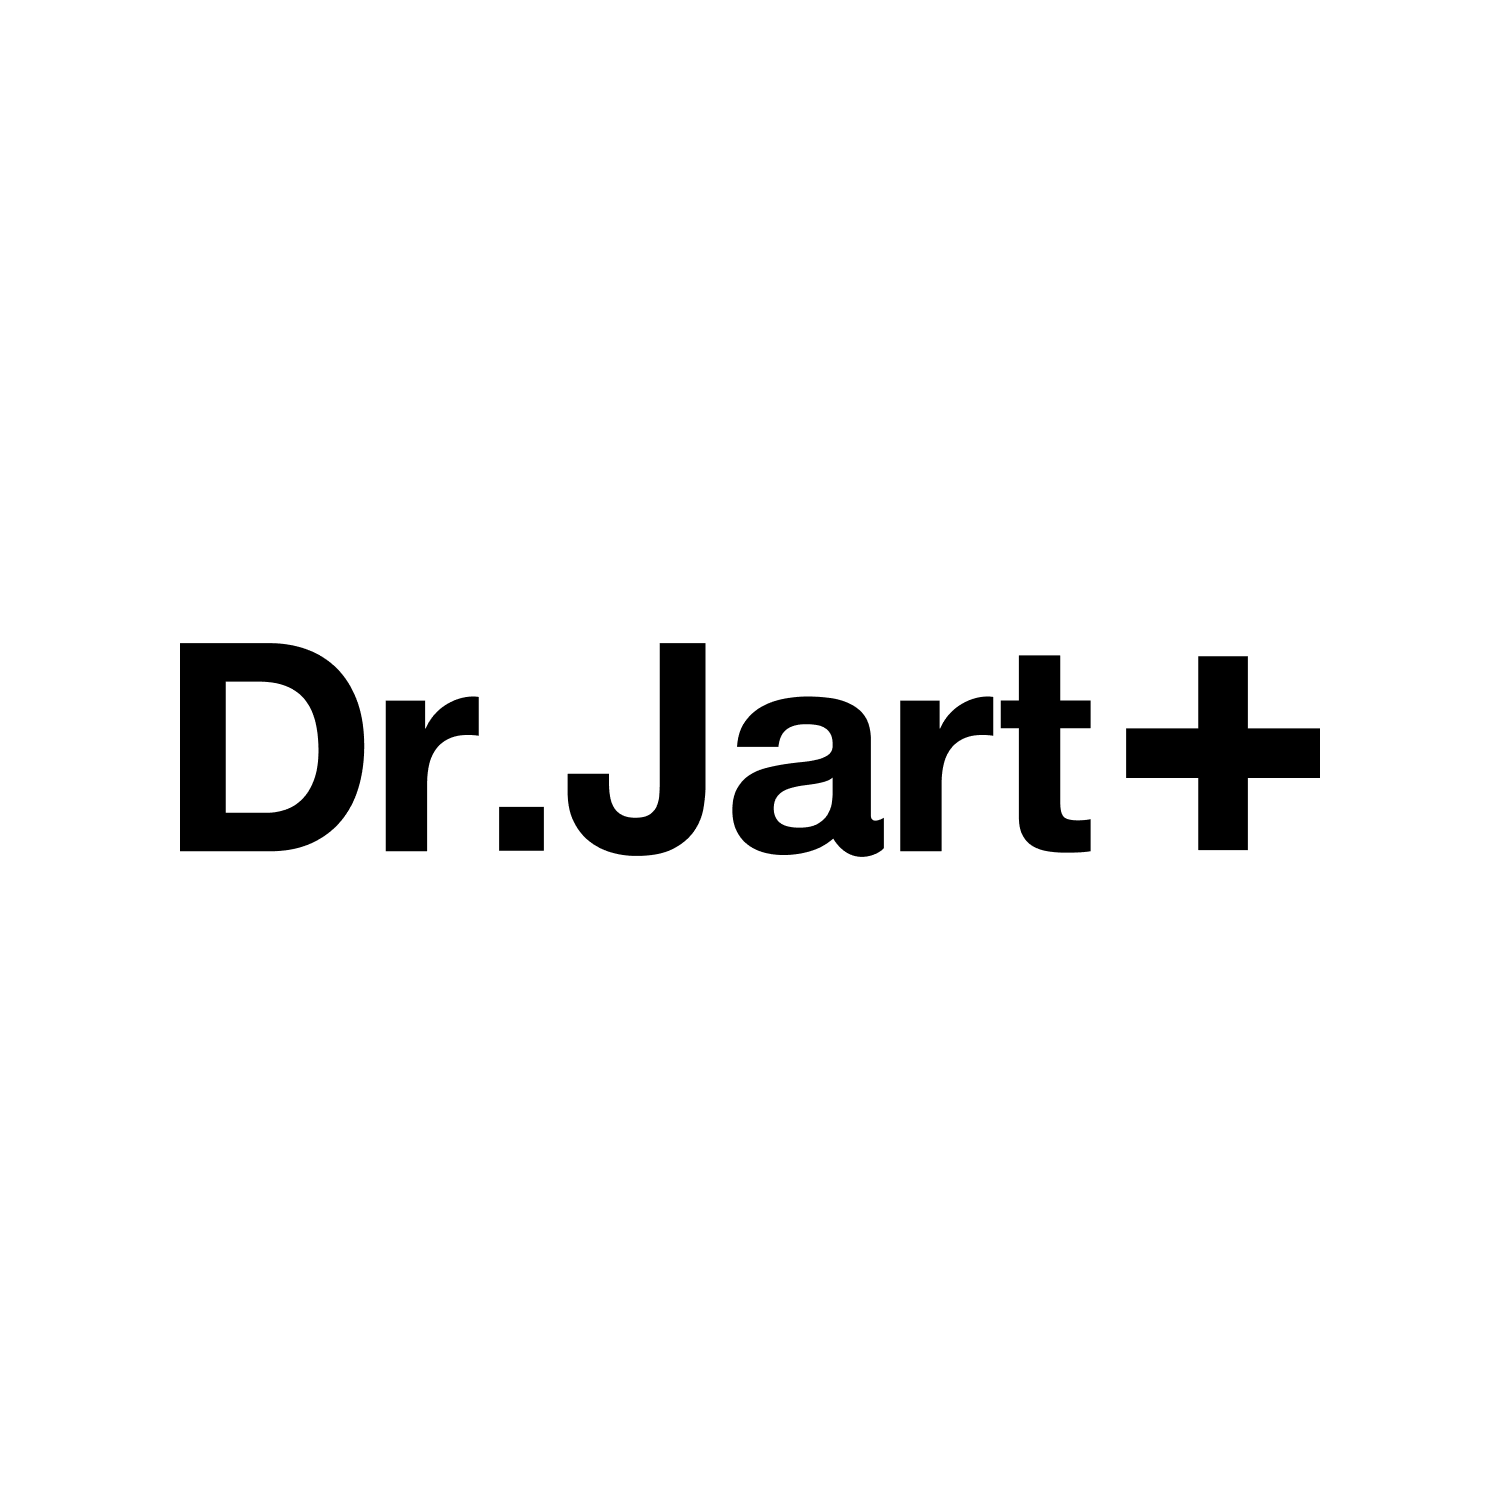 [Dr. Jart+] Collection - Riyadh - Saudi Arabia - Kshopina